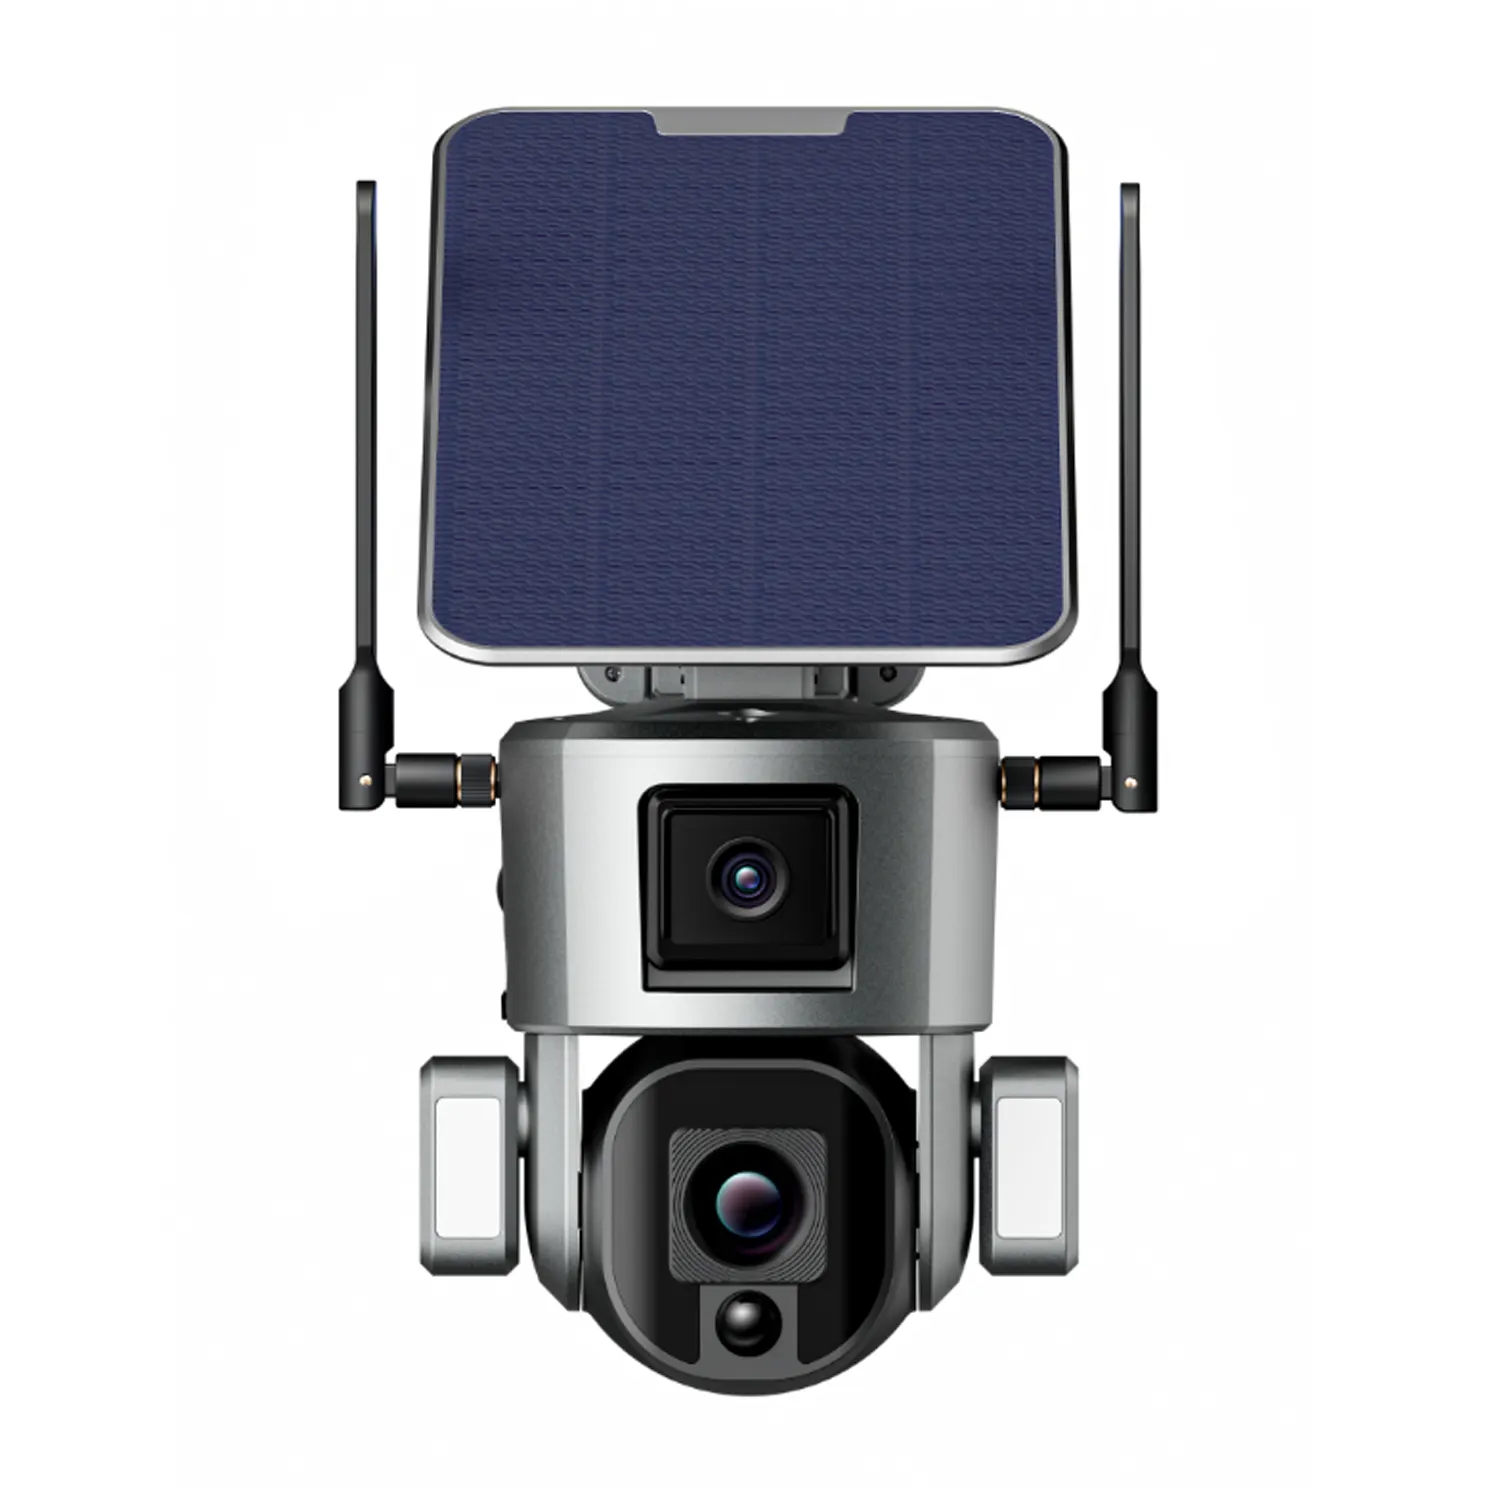 كاميرا Niwit App WiFi /4G بـ 4 ميغابيكسل للاستخدام الخارجي, كاميرا فيديو ذكية مقاومة للماء IP66 ، كاميرا شمسية للأمن المنزلي مع عدستين